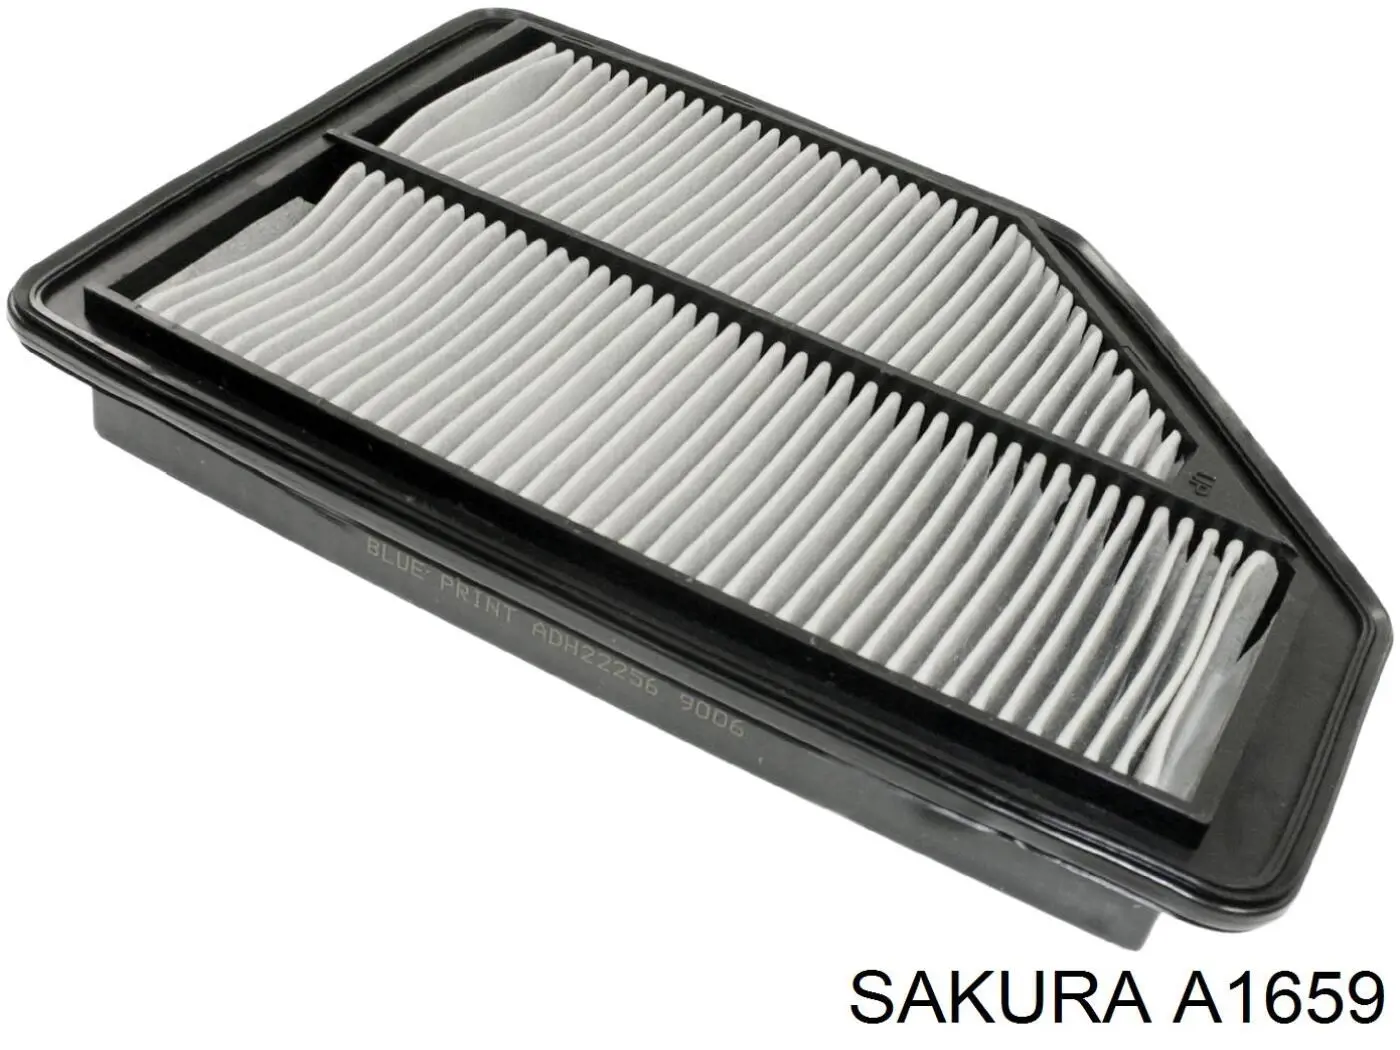 A1659 Sakura filtro de aire